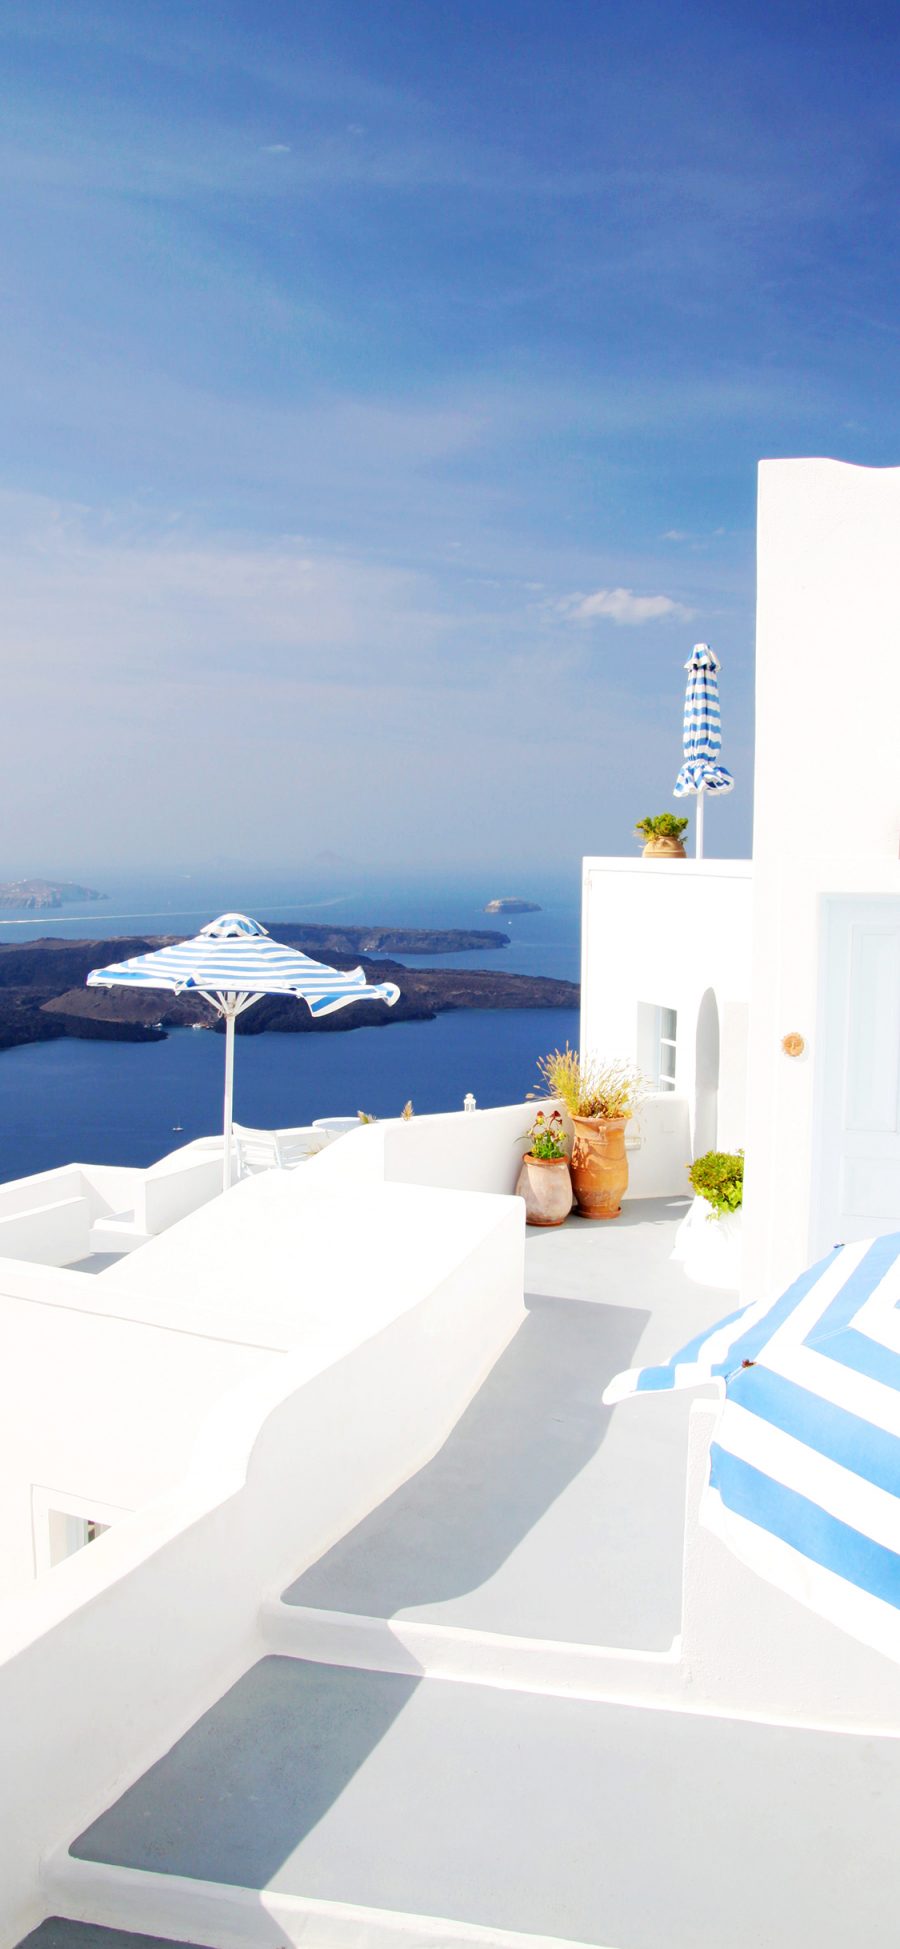 [2436×1125]圣托里尼岛 爱情海 希腊 浪漫 房屋 苹果手机壁纸图片